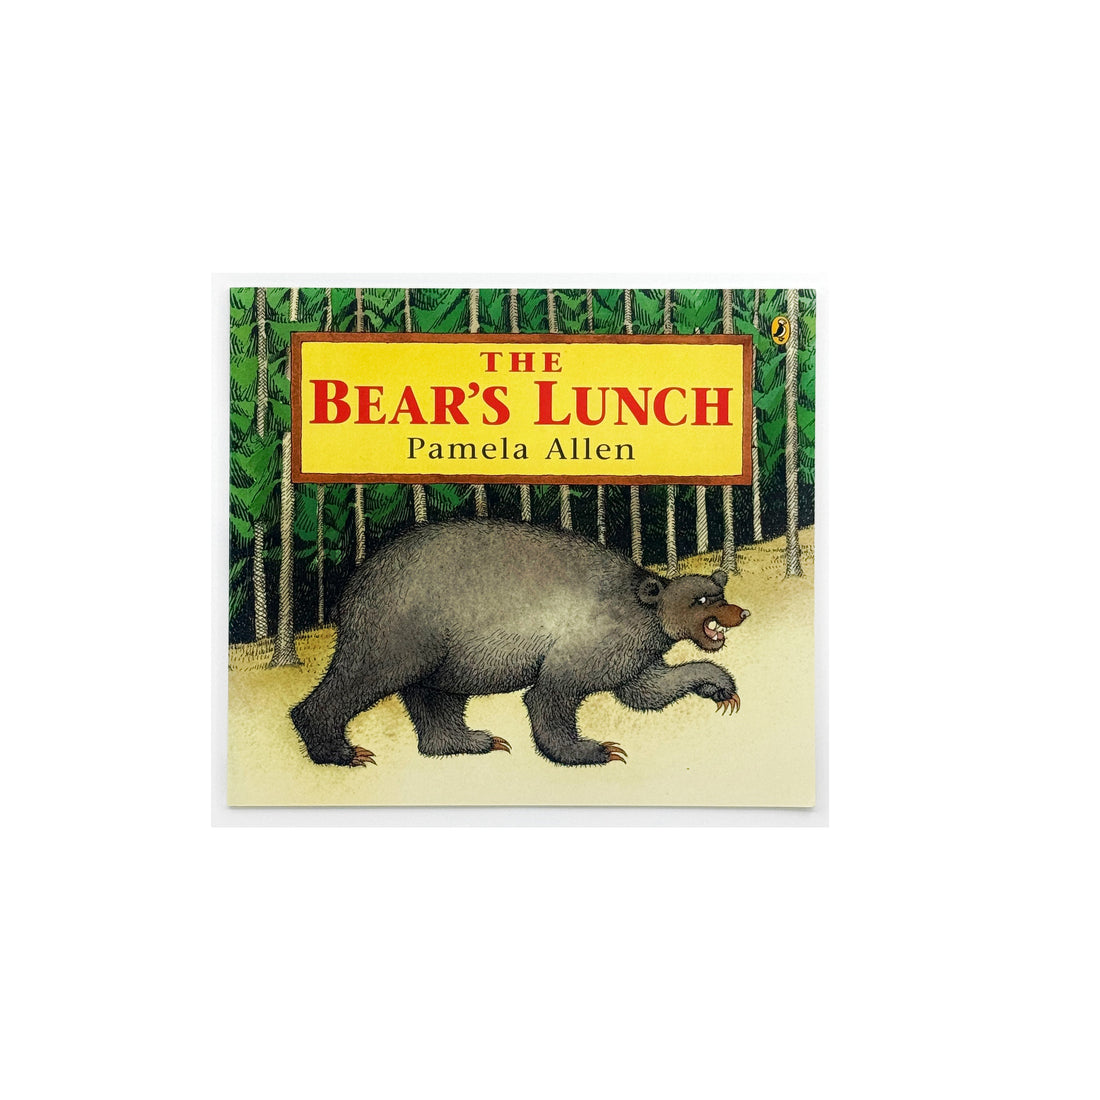 The Bear's Lunch by Pamela Allen